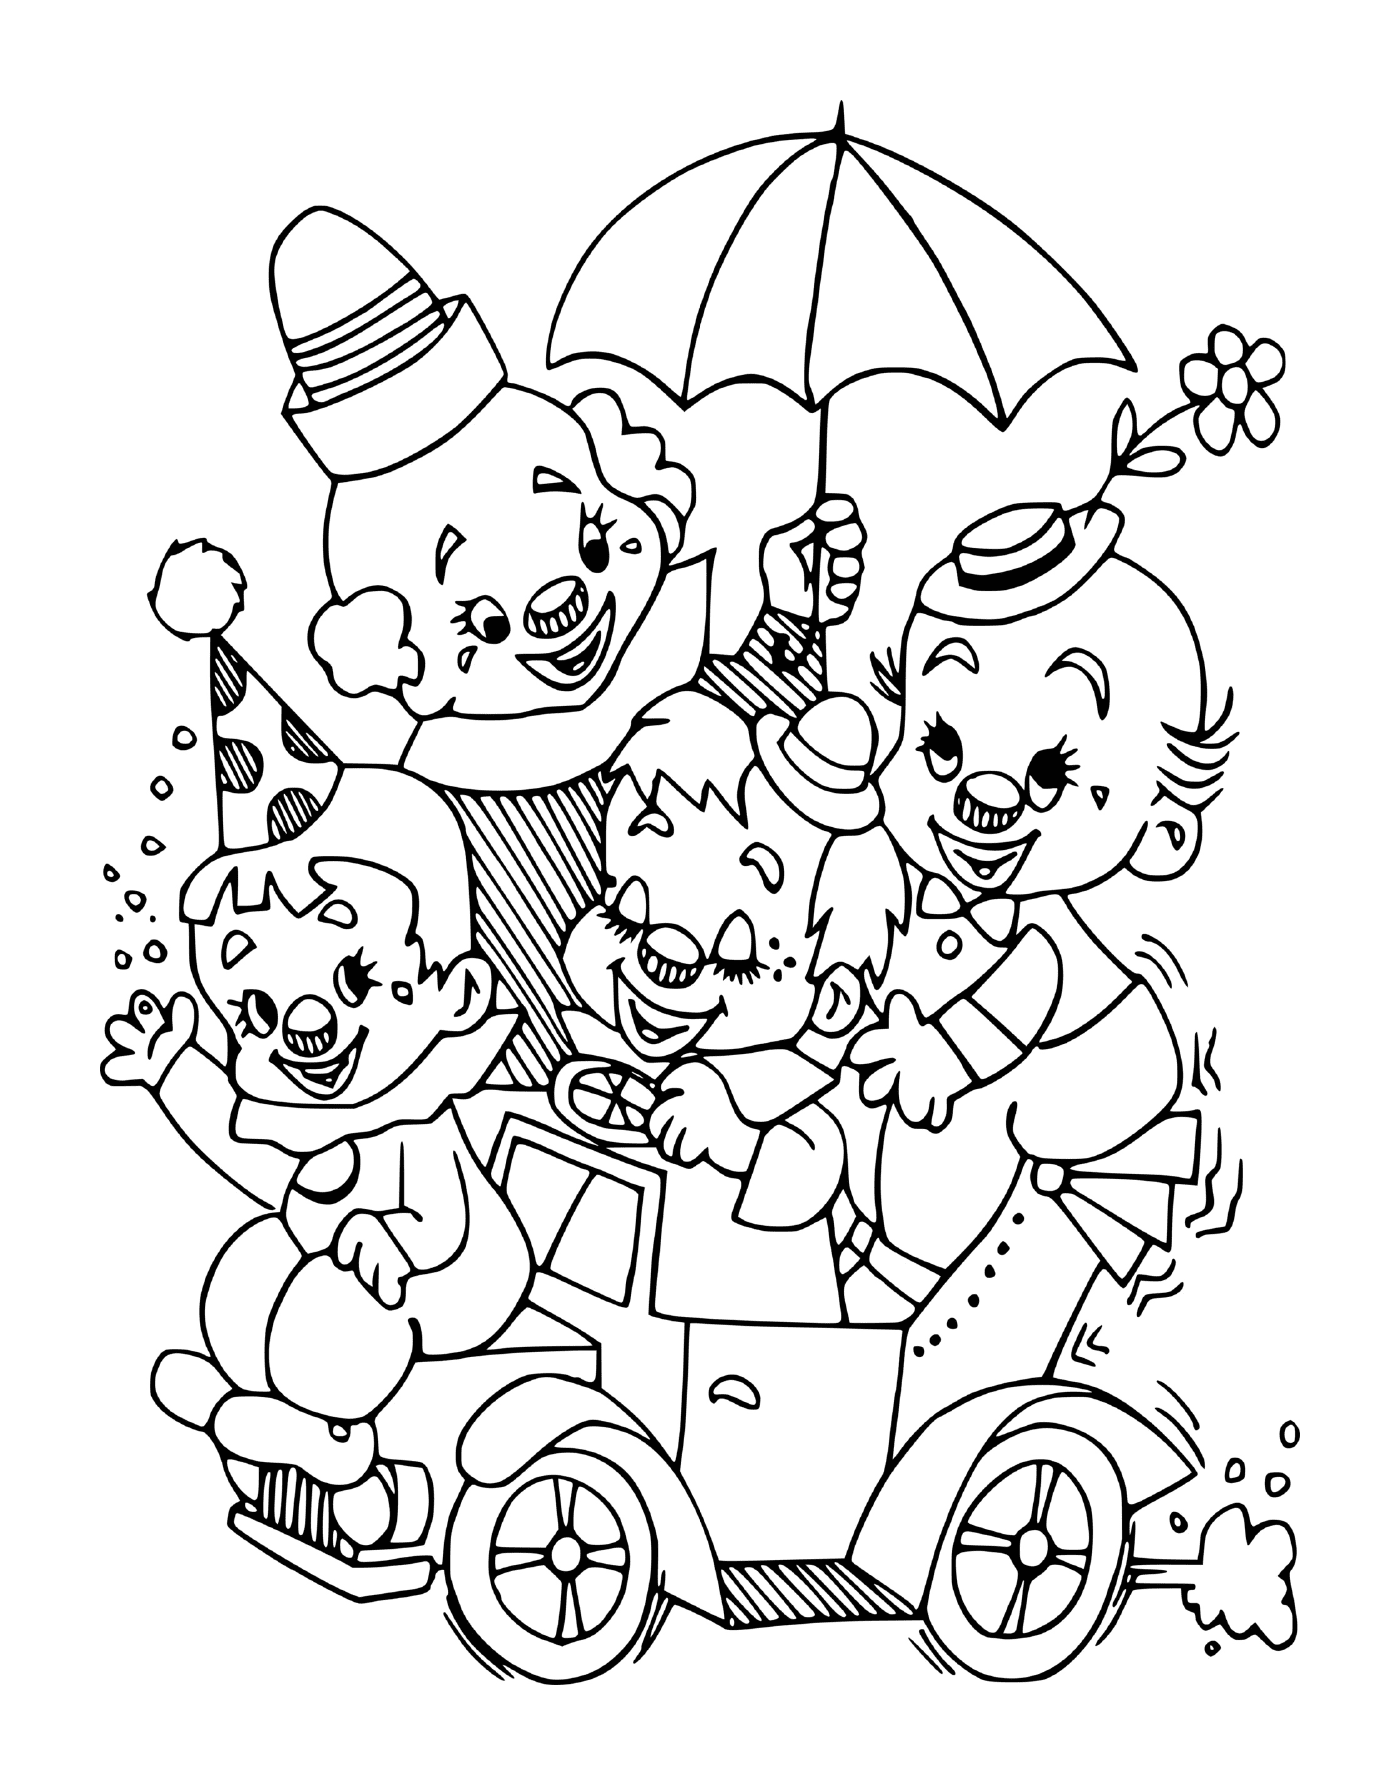  Familie der kleinen Clowns, die auf einem Partyfahrzeug sitzen 